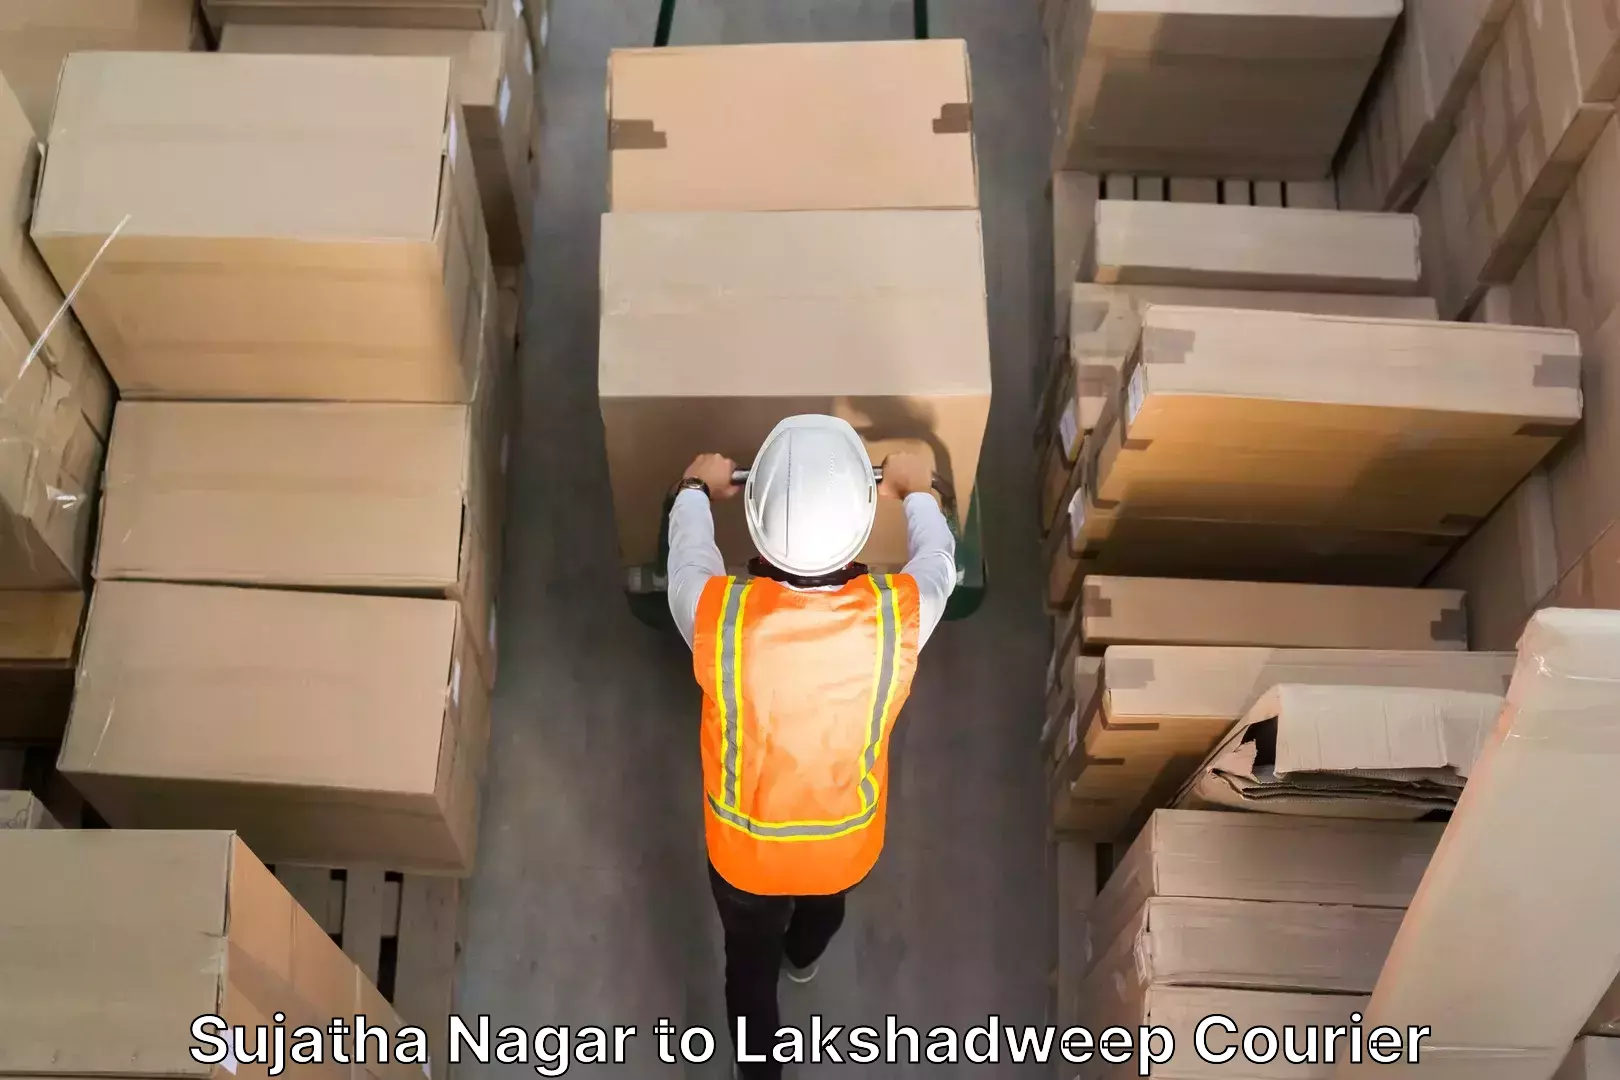 Furniture relocation experts Sujatha Nagar to Lakshadweep